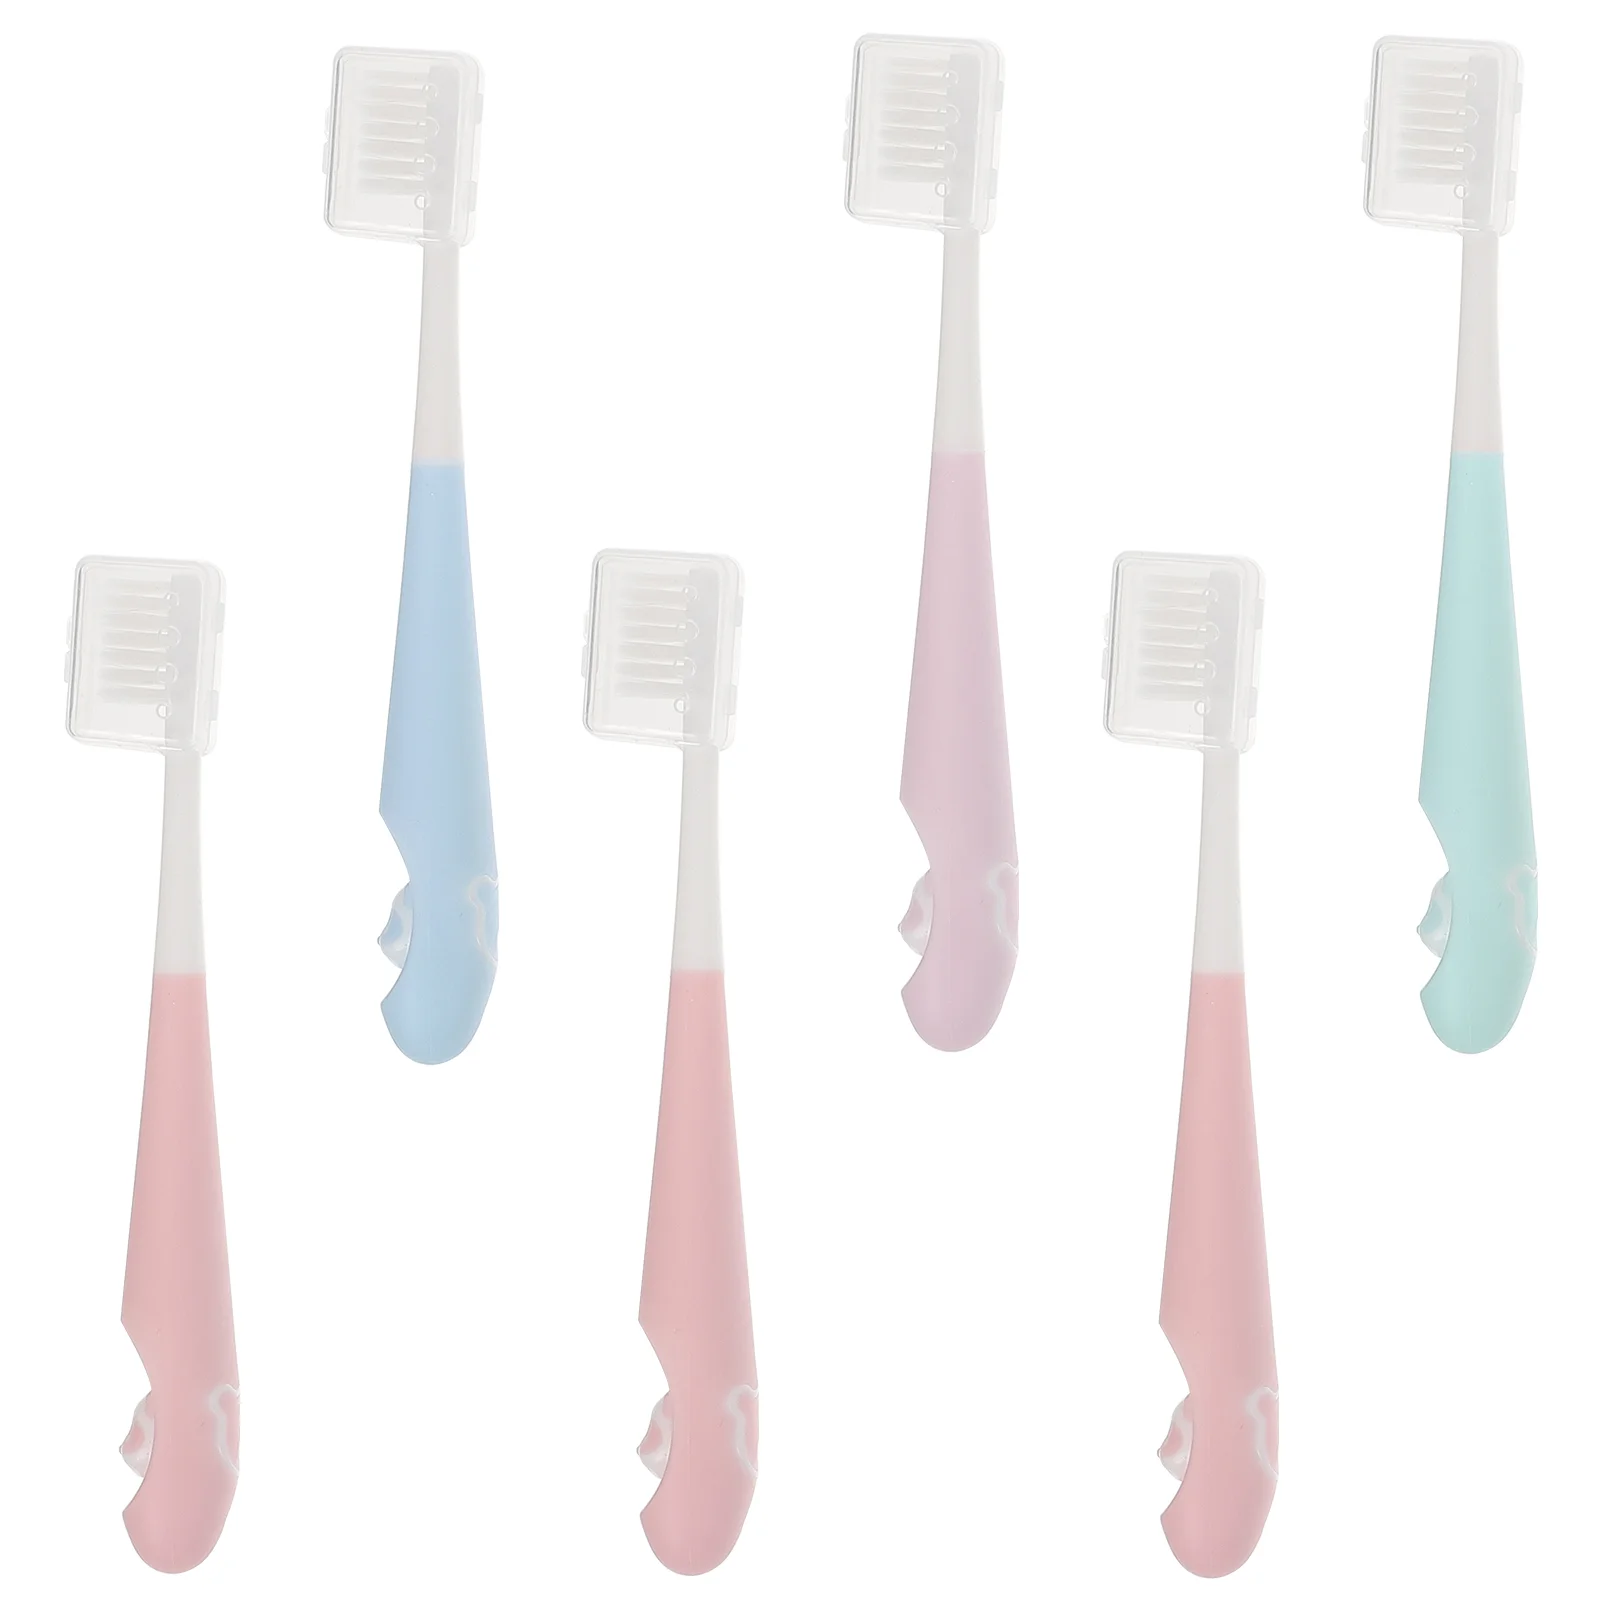 

1 Набор детских зубных щеток для ухода за полостью рта, Мультяшные мягкие зубные щетки (разные цвета)